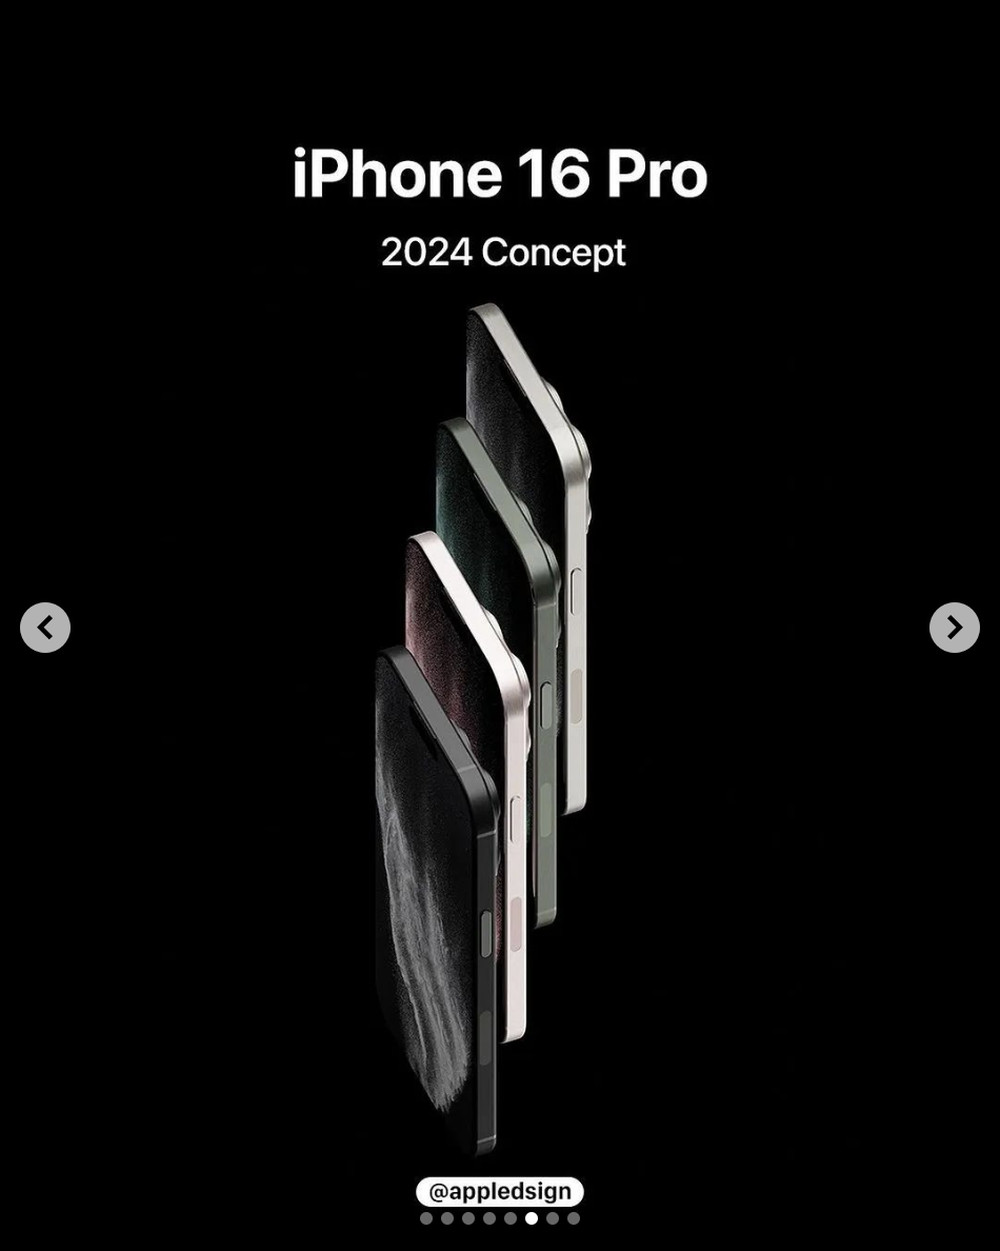 iPhone 16 hé lộ giao diện mới, thay đổi thiết kế với 4 camera, phối màu mới khiến dân tình “nứt mắt” - ảnh 3